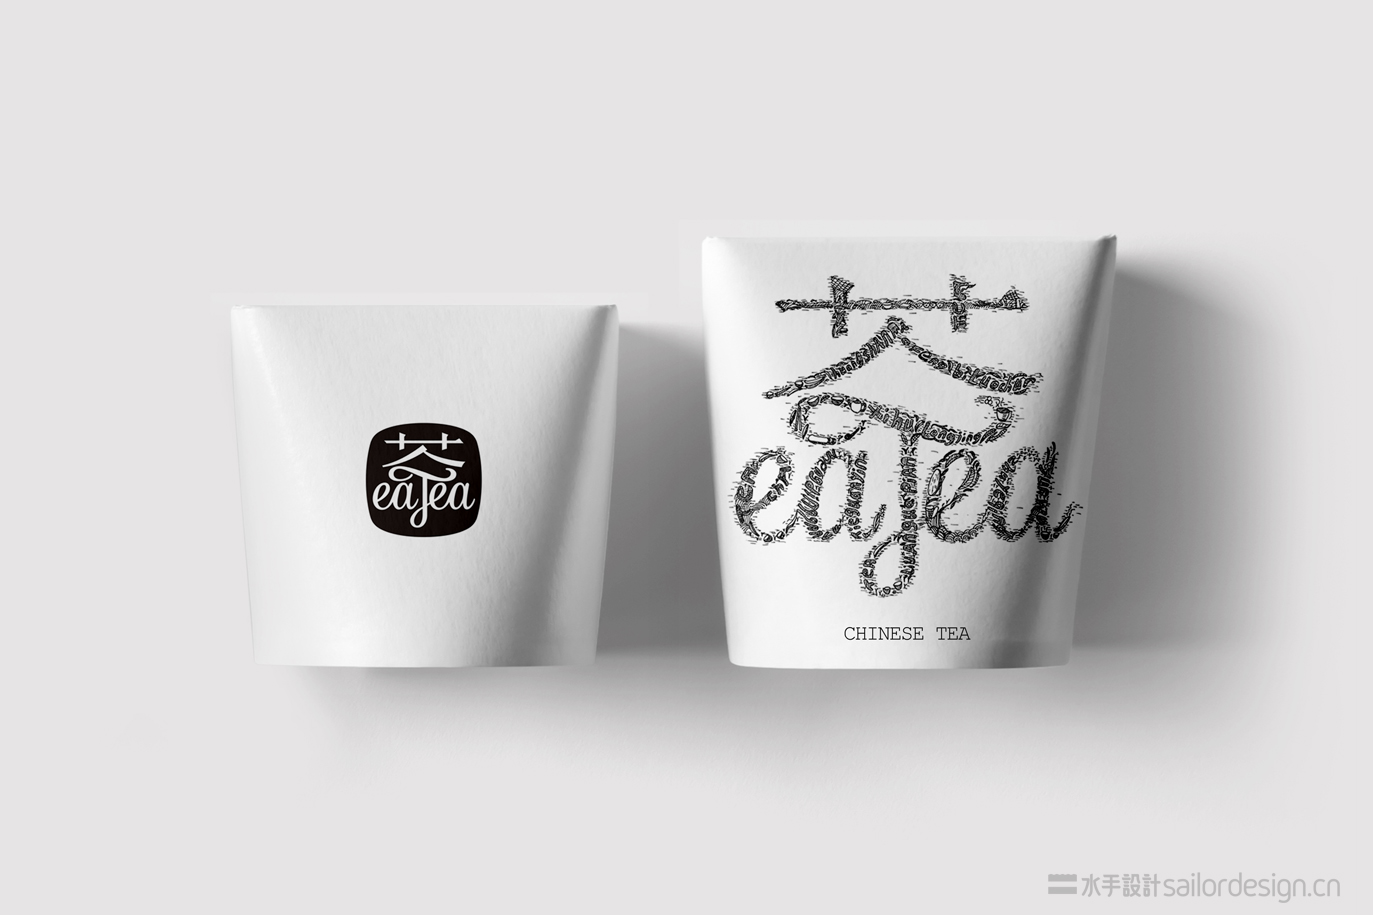 美国eaTea 私房茶品牌形象与包装设计